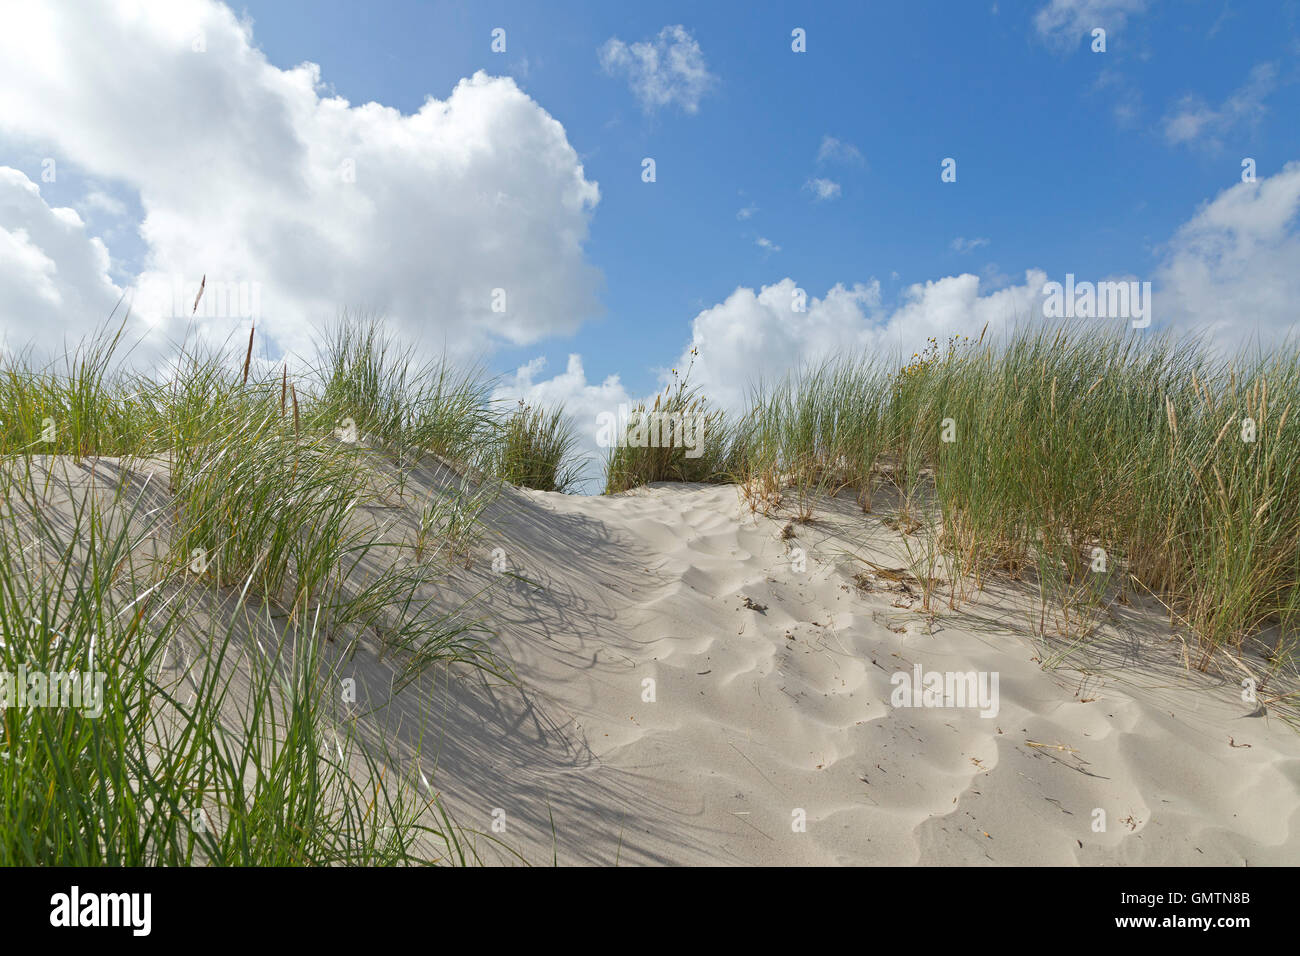 dunes, Utersum, Foehr Island, North Friesland, Schleswig-Holstein, Germany Stock Photo